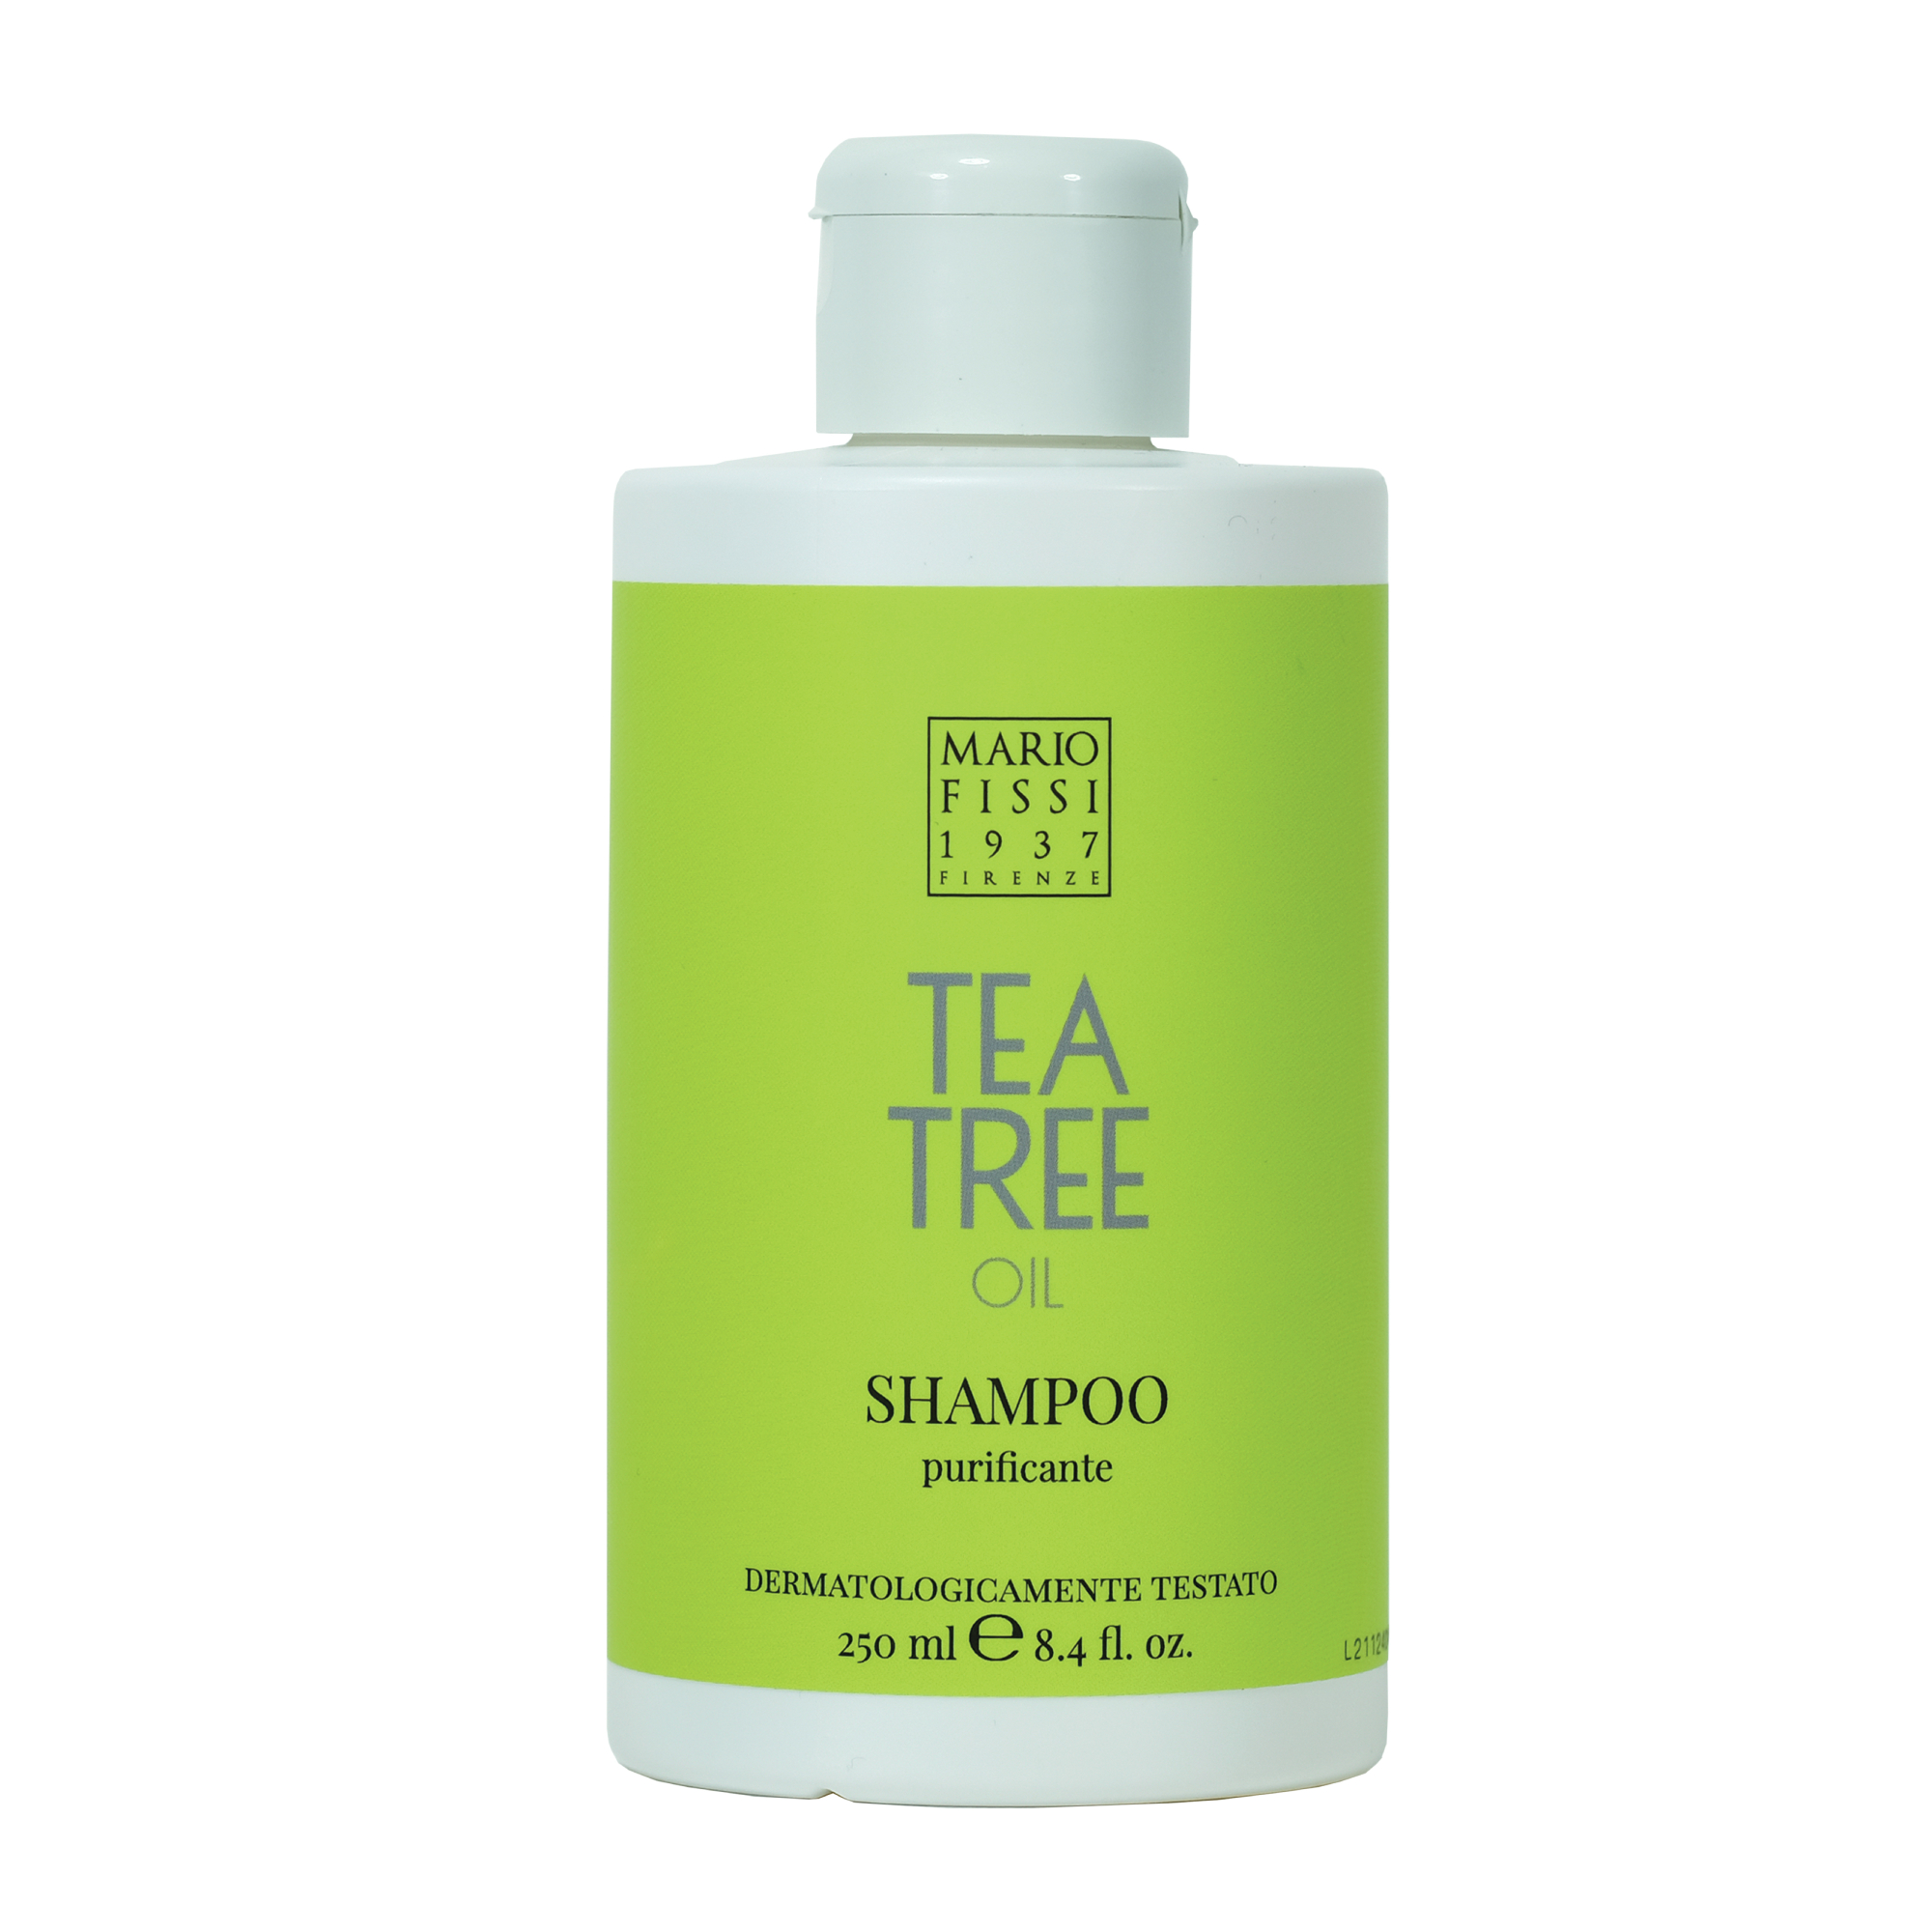 Шампунь для волос Mario Fissi 1937 Funzioniale Tea Tree Oil Очищающий С маслом Чайного Дерева 250 мл солевая ванночка концентрат с маслом чайного дерева для ног 170 мл